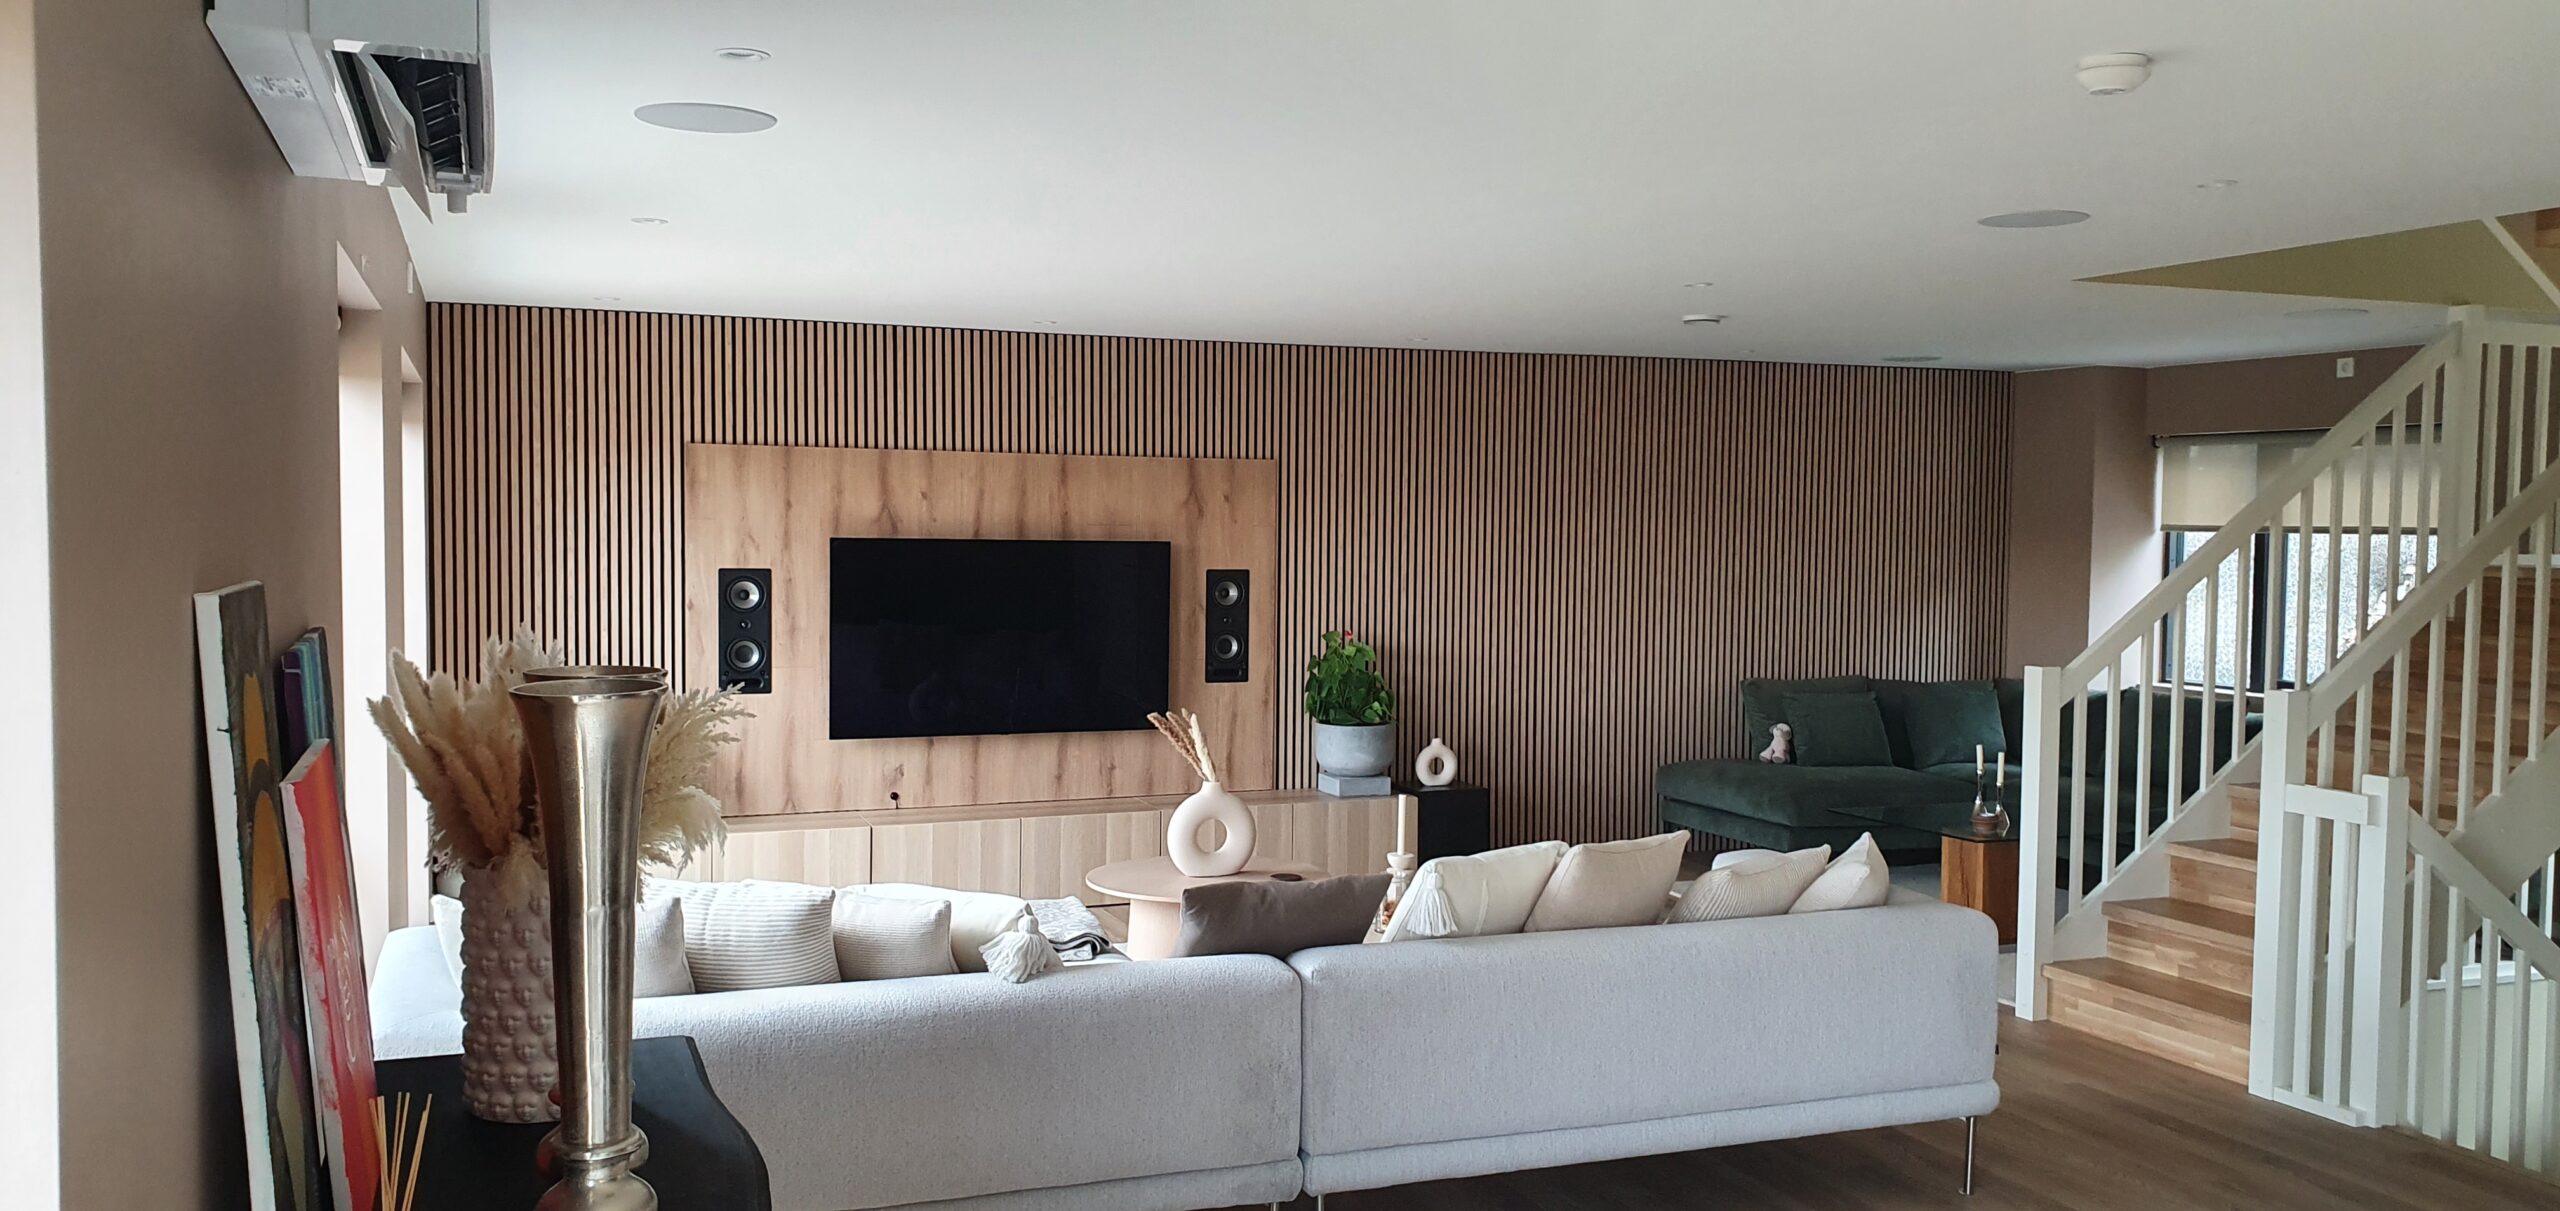 Stue, Finstue, Spisestue, TV-Stue innredning med integrert lyd og bilde system med innfelte arkitektur høyttalere